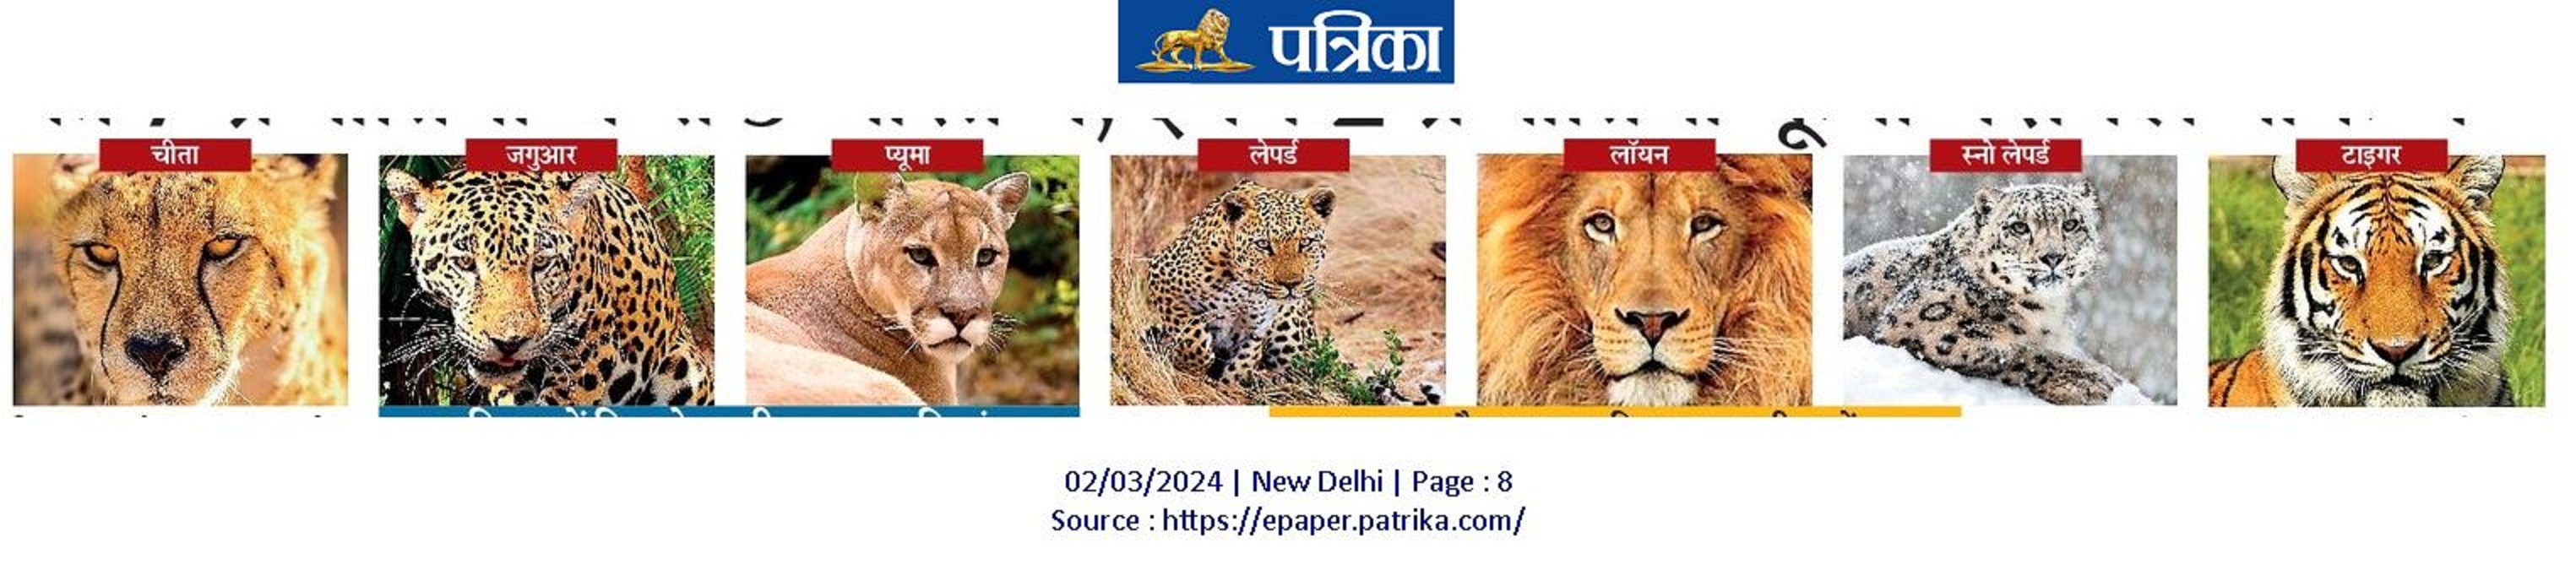 बिग कैट की 7 प्रजातियों में से 5 भारत में, इनमें 2 कूनो नेशनल पार्क में